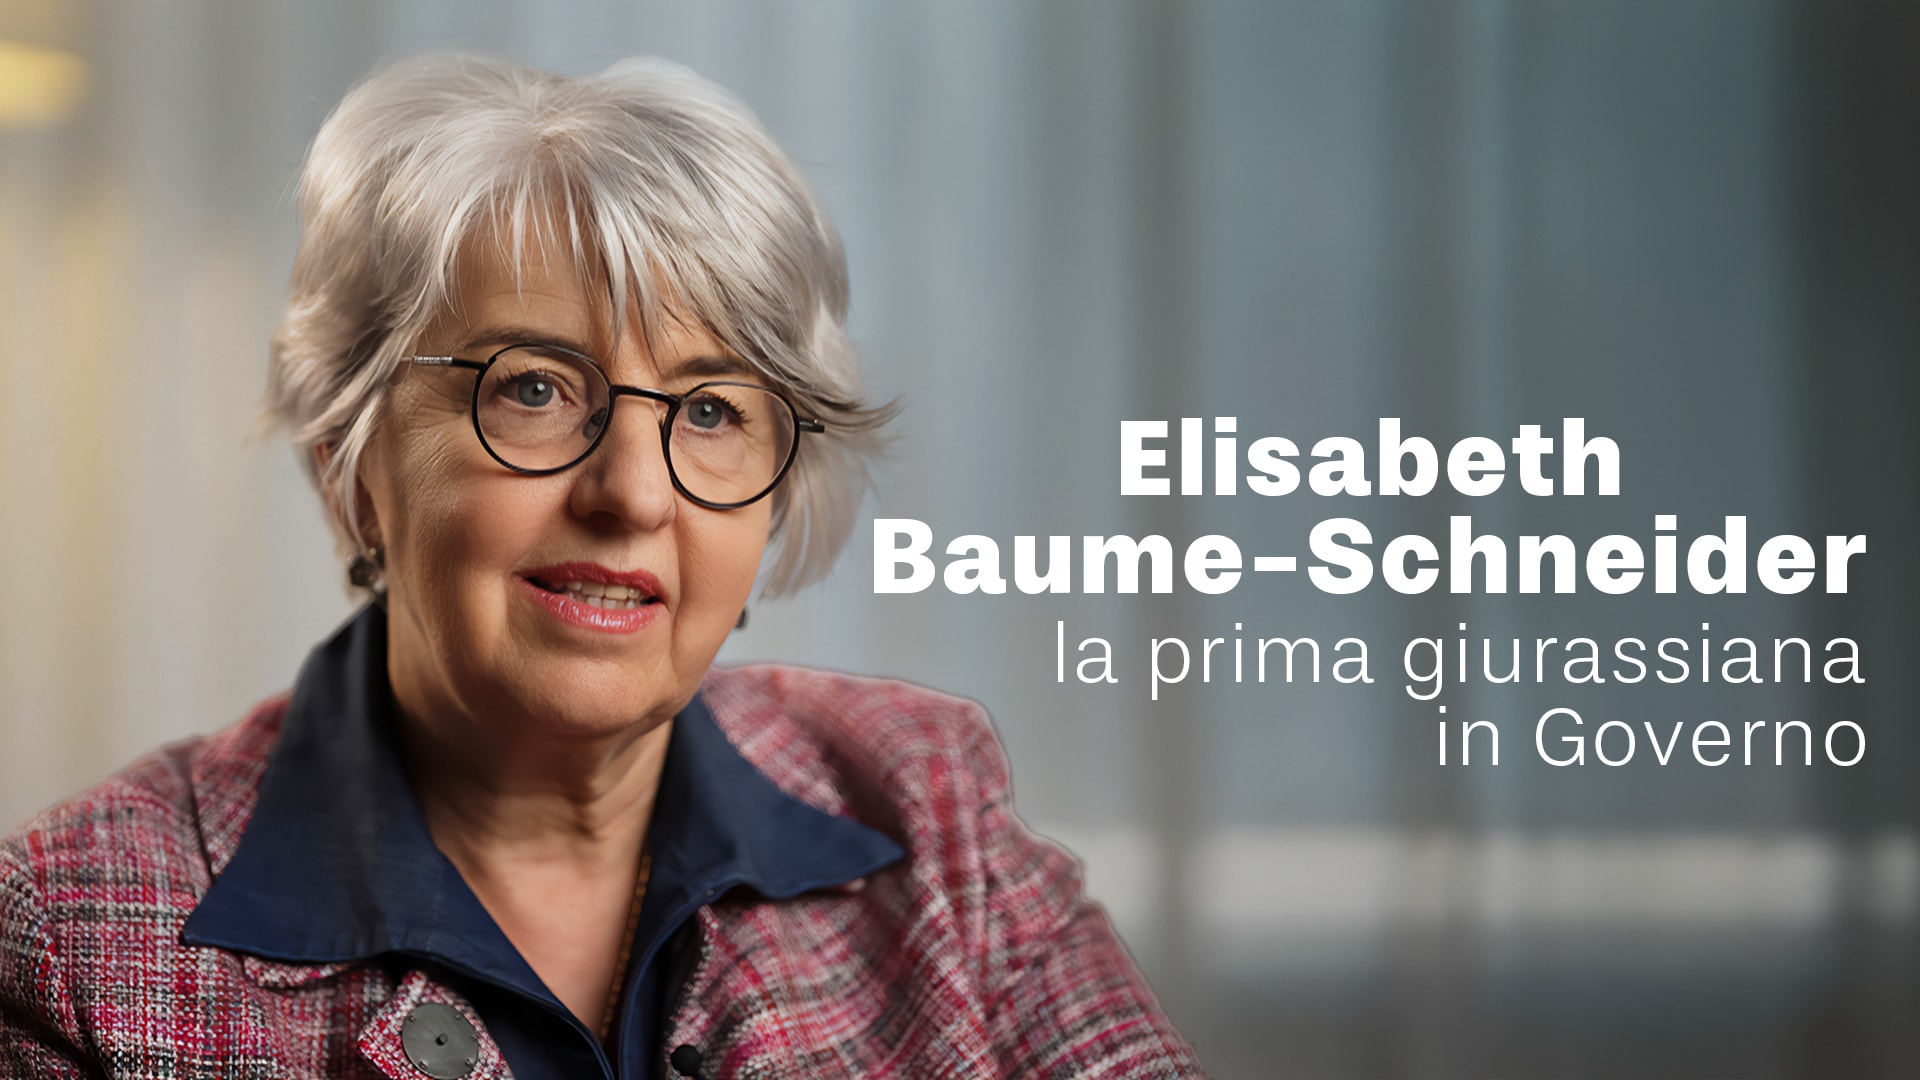 Elisabeth Baume-Schneider, la prima giurassiana in Governo